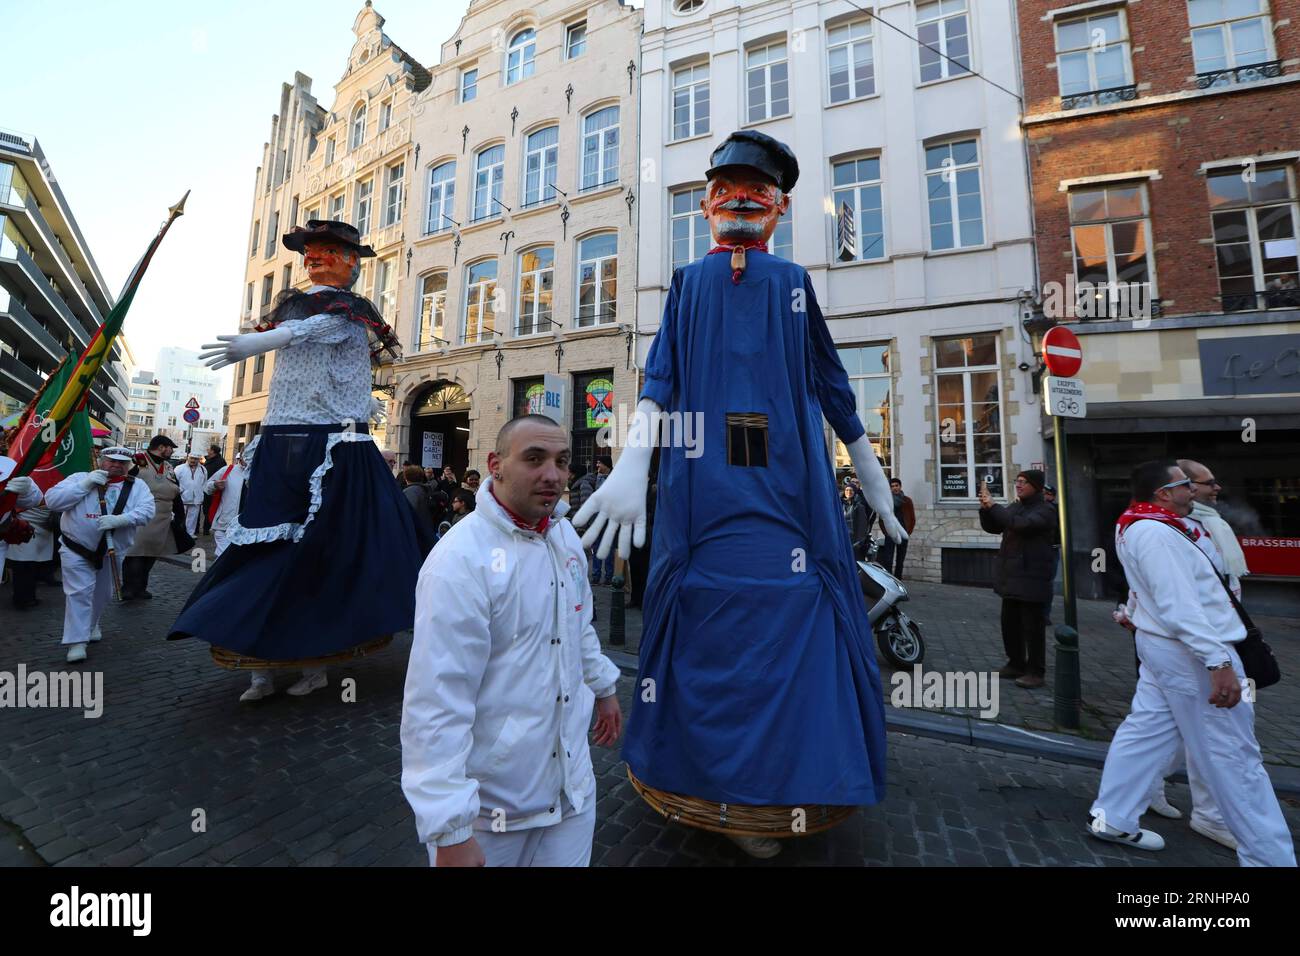 Die Menschen nehmen an der Saint-Nicolas-Parade in Brüssel, Belgien, am 3. Dezember 2016 Teil. Saint-Nicolas, einer der Quellen der beliebten Weihnachtssymbole des Weihnachtsmanns, wird jährlich am Nikolaustag gefeiert. )(gj) BELGIEN-BRÜSSEL-SAINT NICOLAS GongxBing PUBLICATIONxNOTxINxCHN Prominente nehmen an der Saint NICOLAS Parade in Brüssel Teil DEC 3 2016 Saint Nicolas, der eine der Quellen der beliebten Weihnachtsfigur des Santa Claus IST, WIRD jährlich AM St. Nikolaus Tag GJ Belgien Brüssel Saint Nicolas GongxBing PUBLICATINxCHN gefeiert Stockfoto